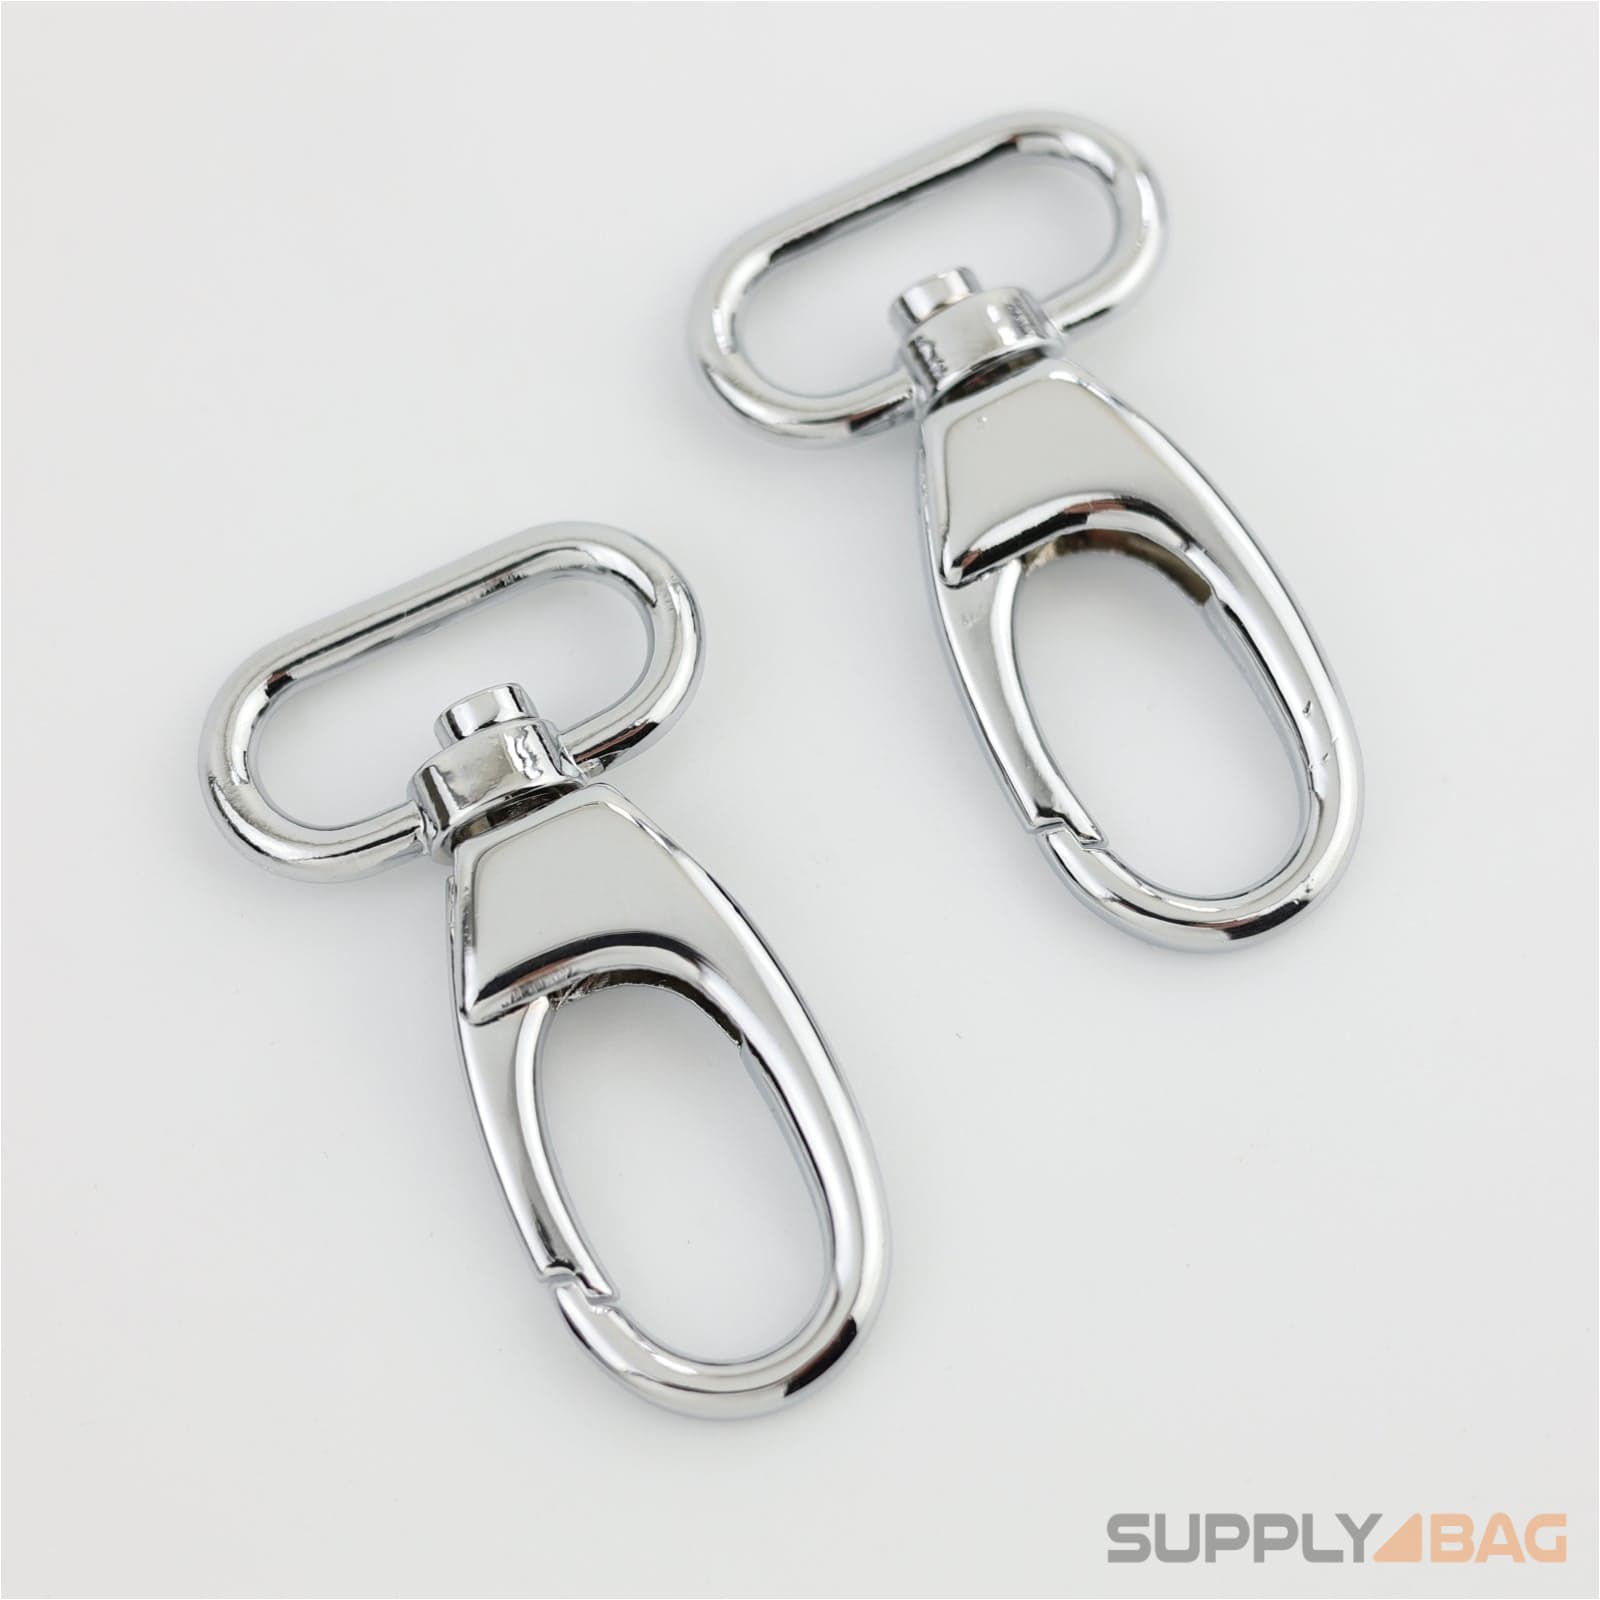 Silver Swivel Hooks 1 inch - 2 Pack